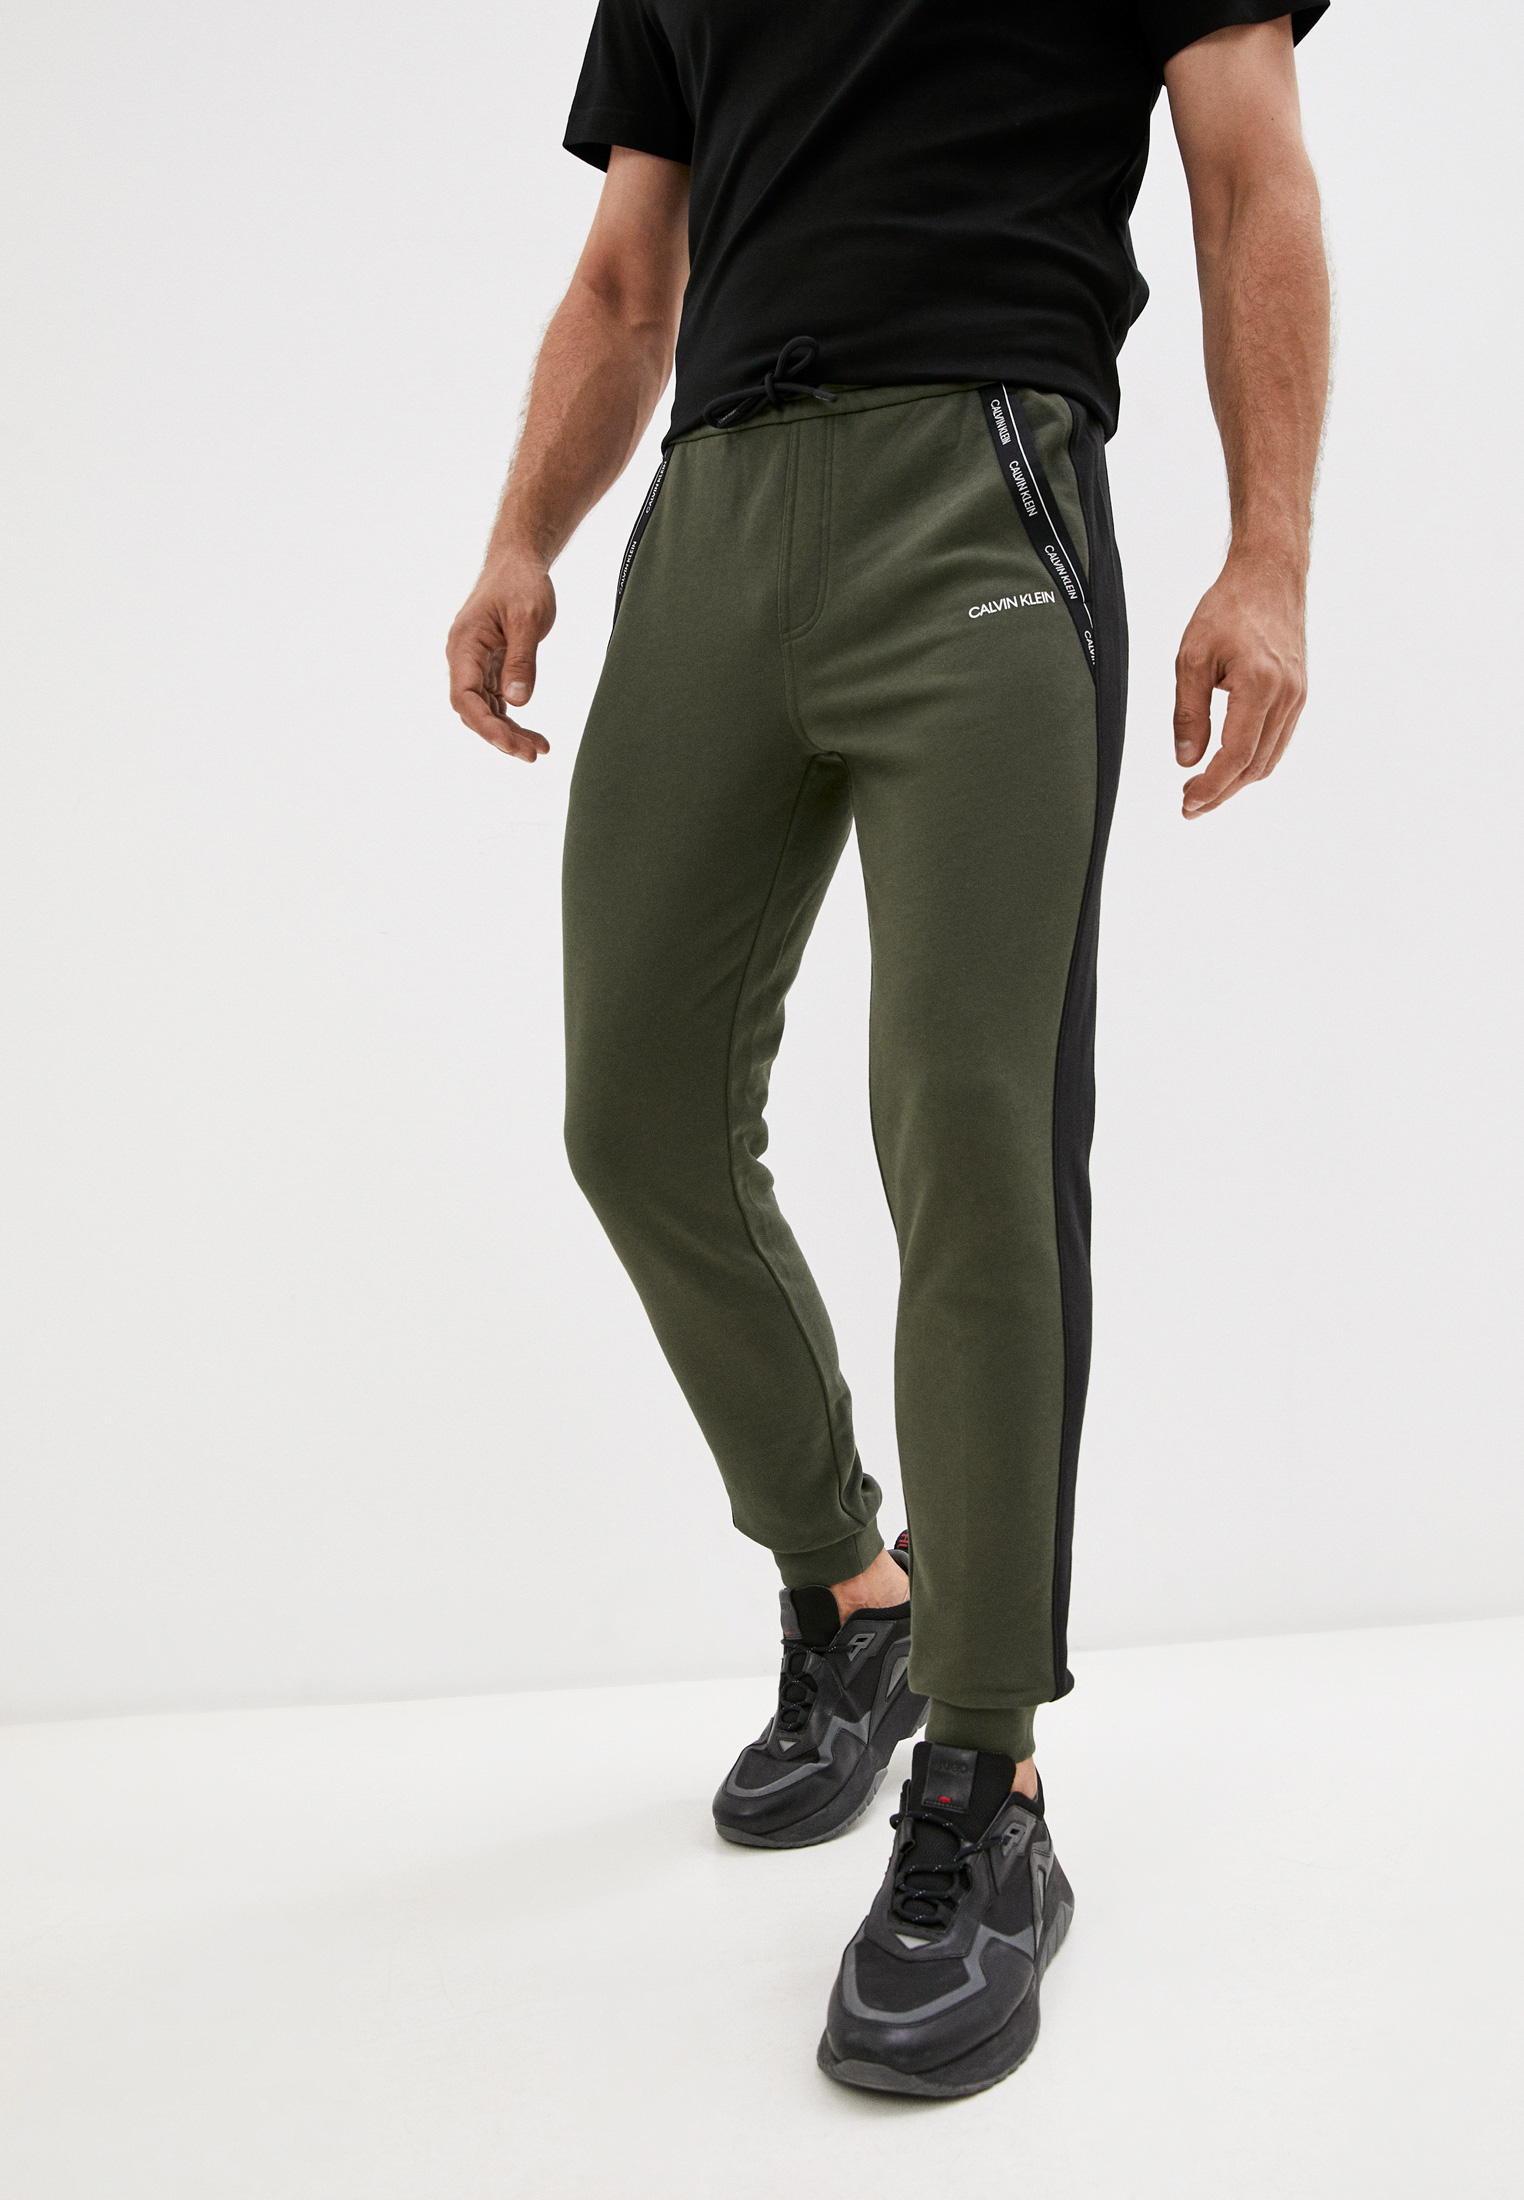 Мужские спортивные брюки Calvin Klein (Кельвин Кляйн) K10K107251 (Цвет:Хаки) купить в интернет-магазине stylefish.ru